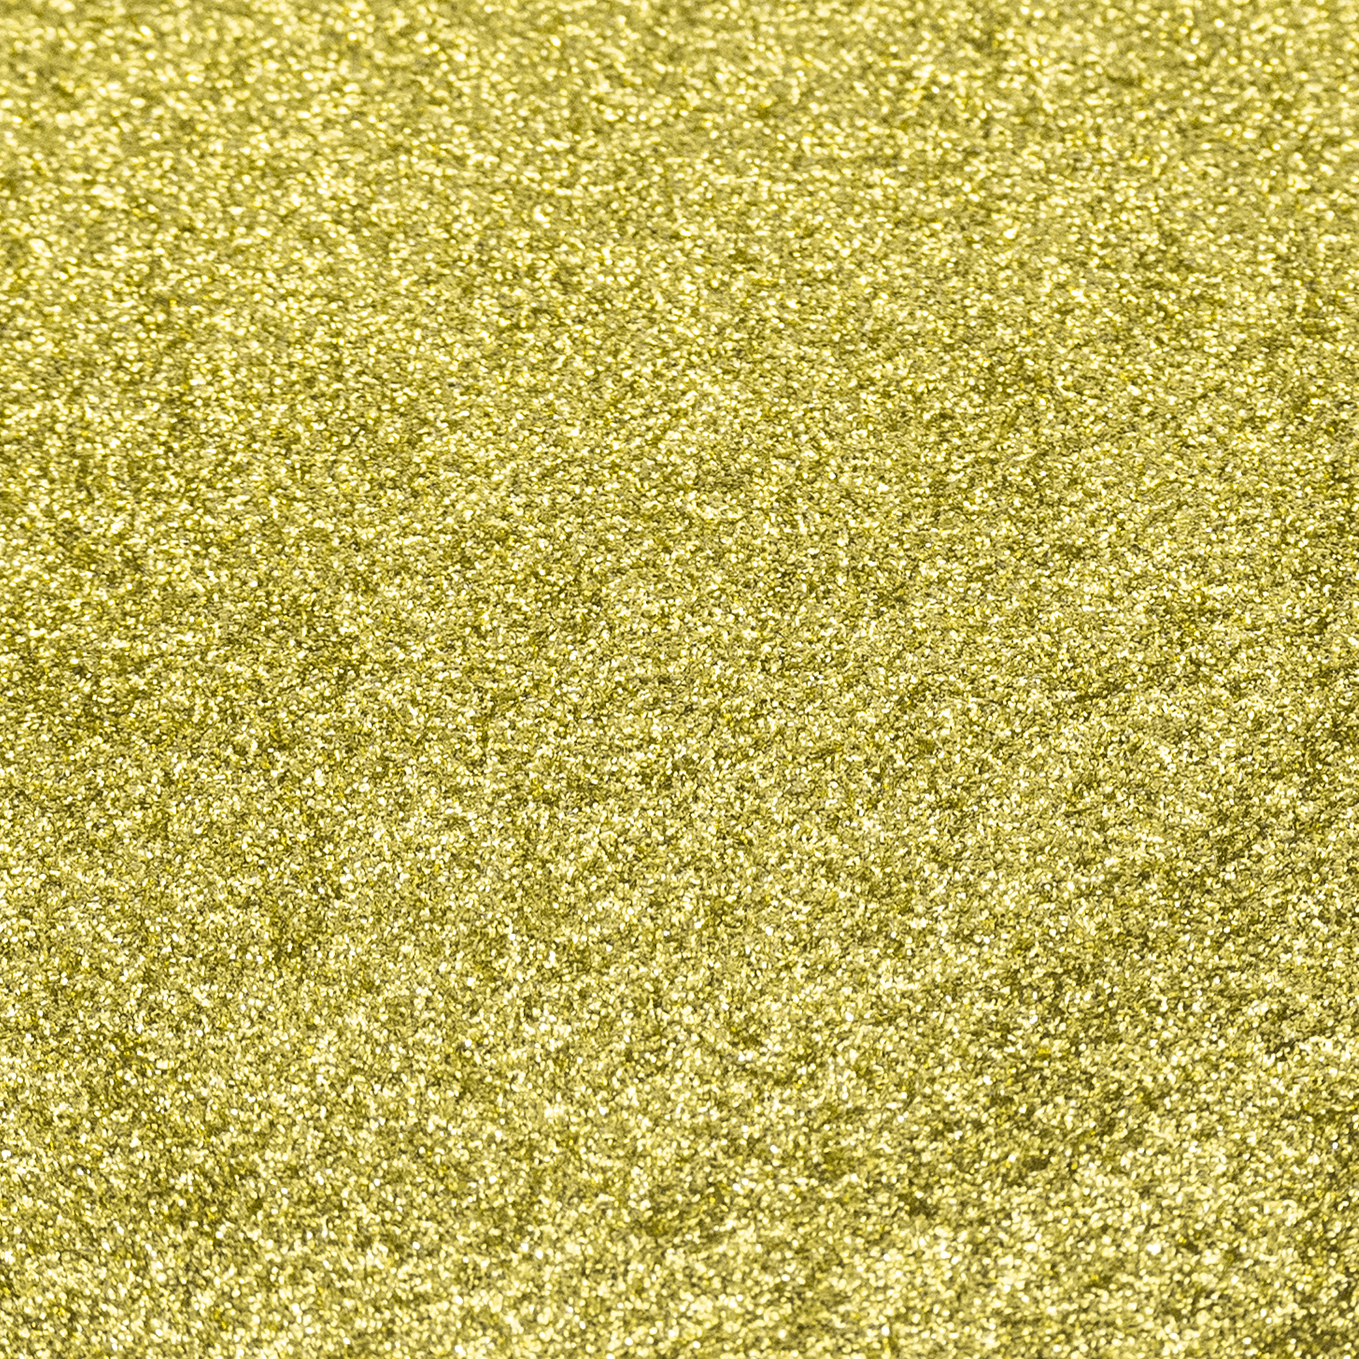 Medallion Gold 100g - Resi Glitter Fine